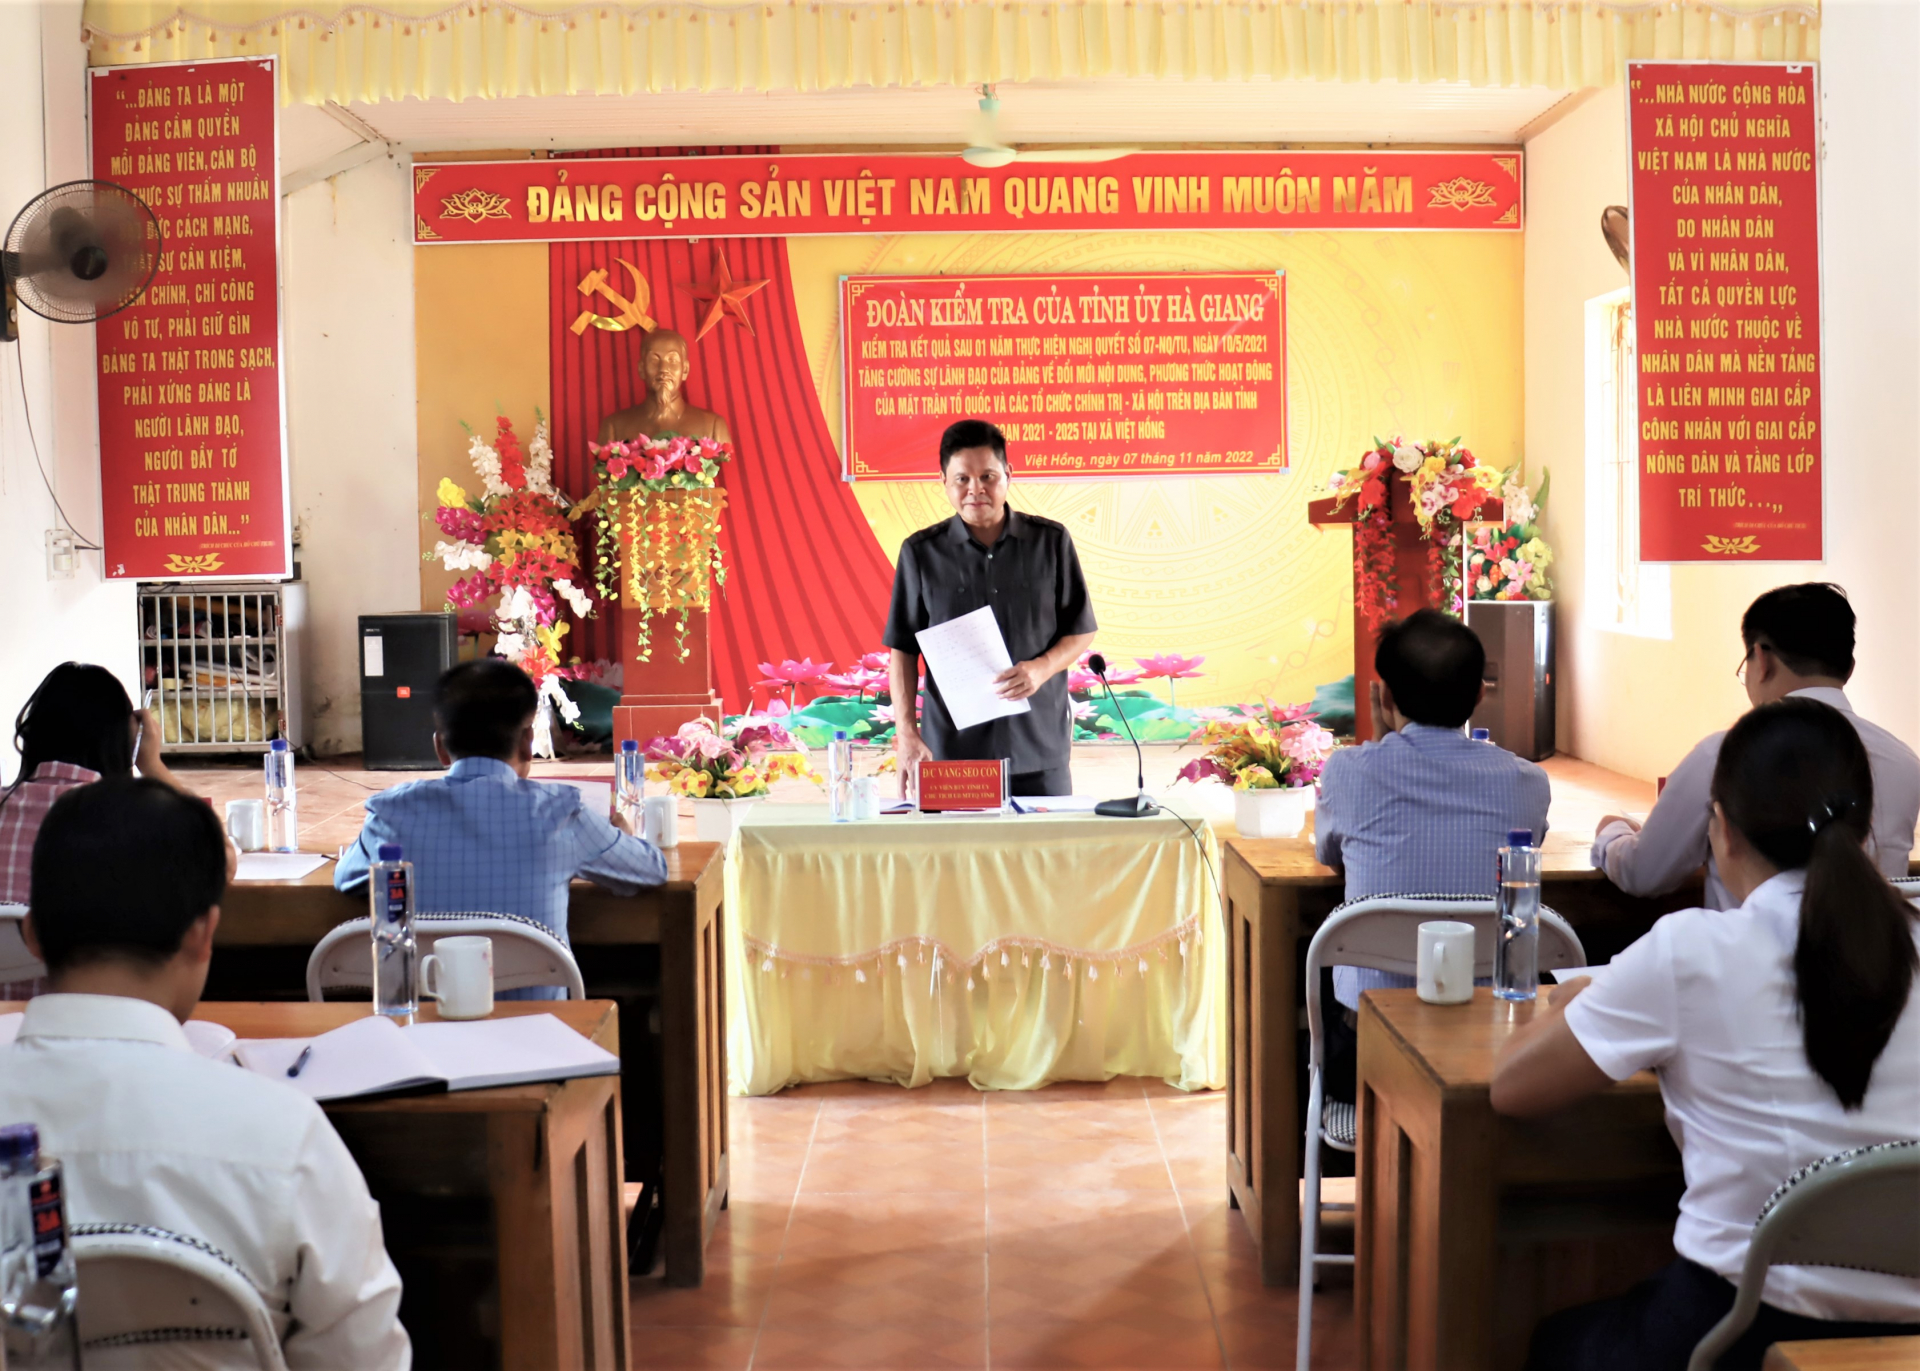 Chủ tịch Ủy ban MTTQ tỉnh Vàng Seo Cón kết luận buổi làm việc với Đảng ủy xã Việt Hồng.